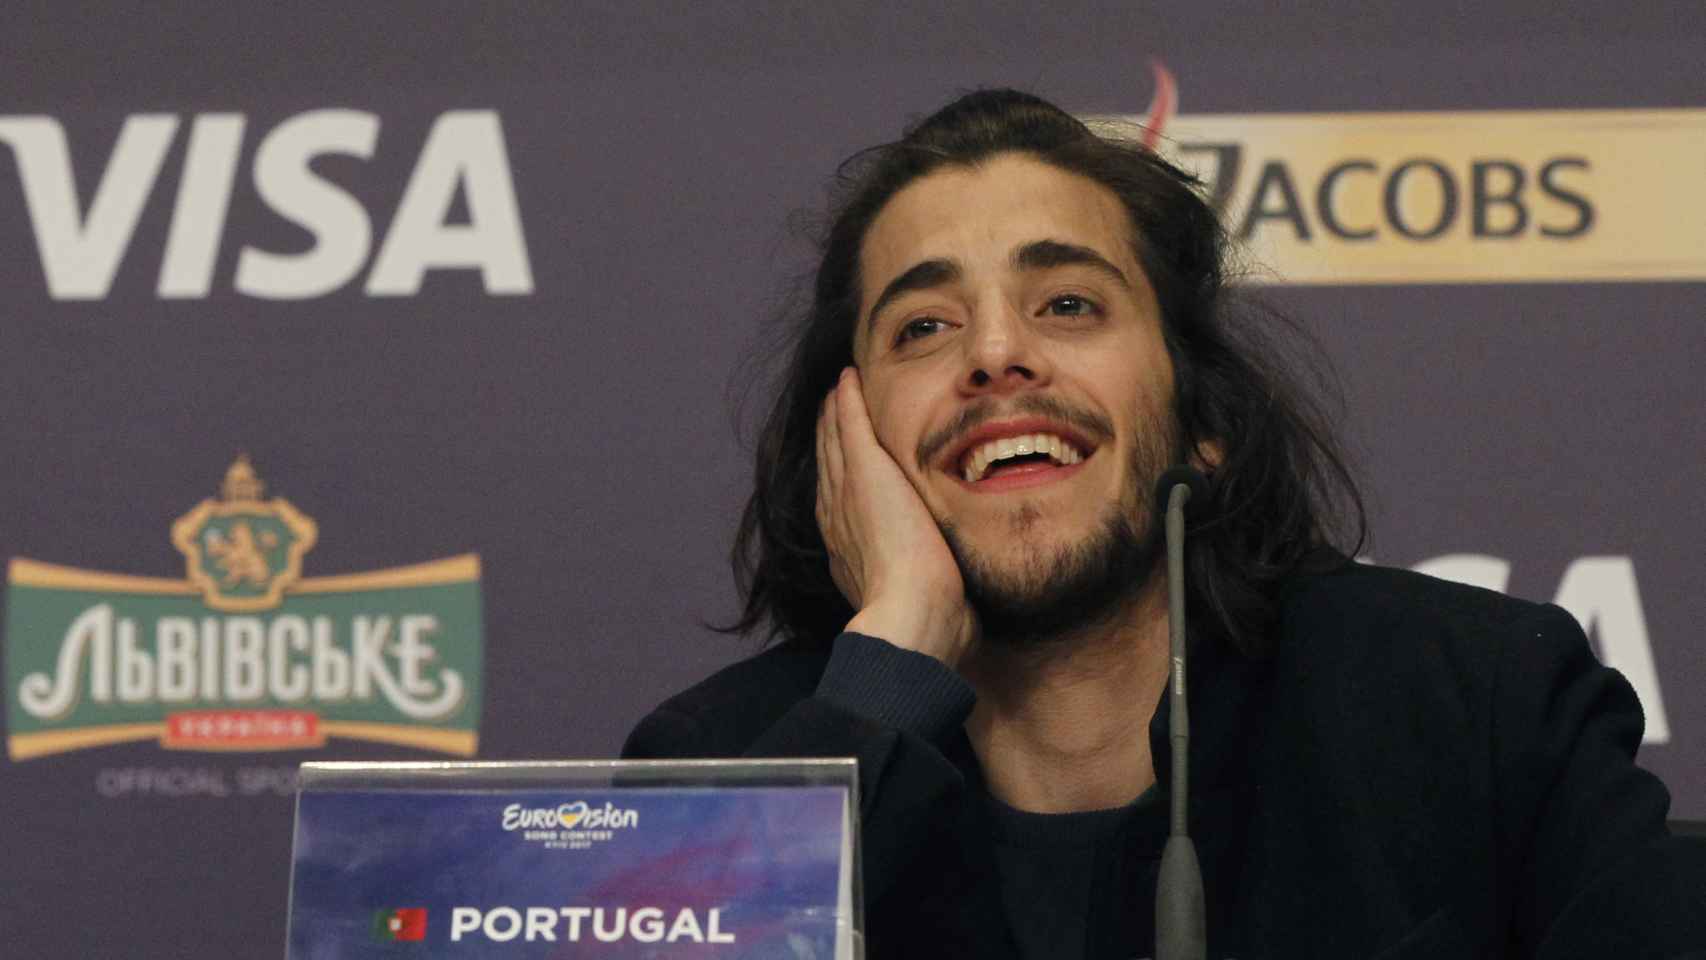 Salvador Sobral  tras ganar Eurovisión.